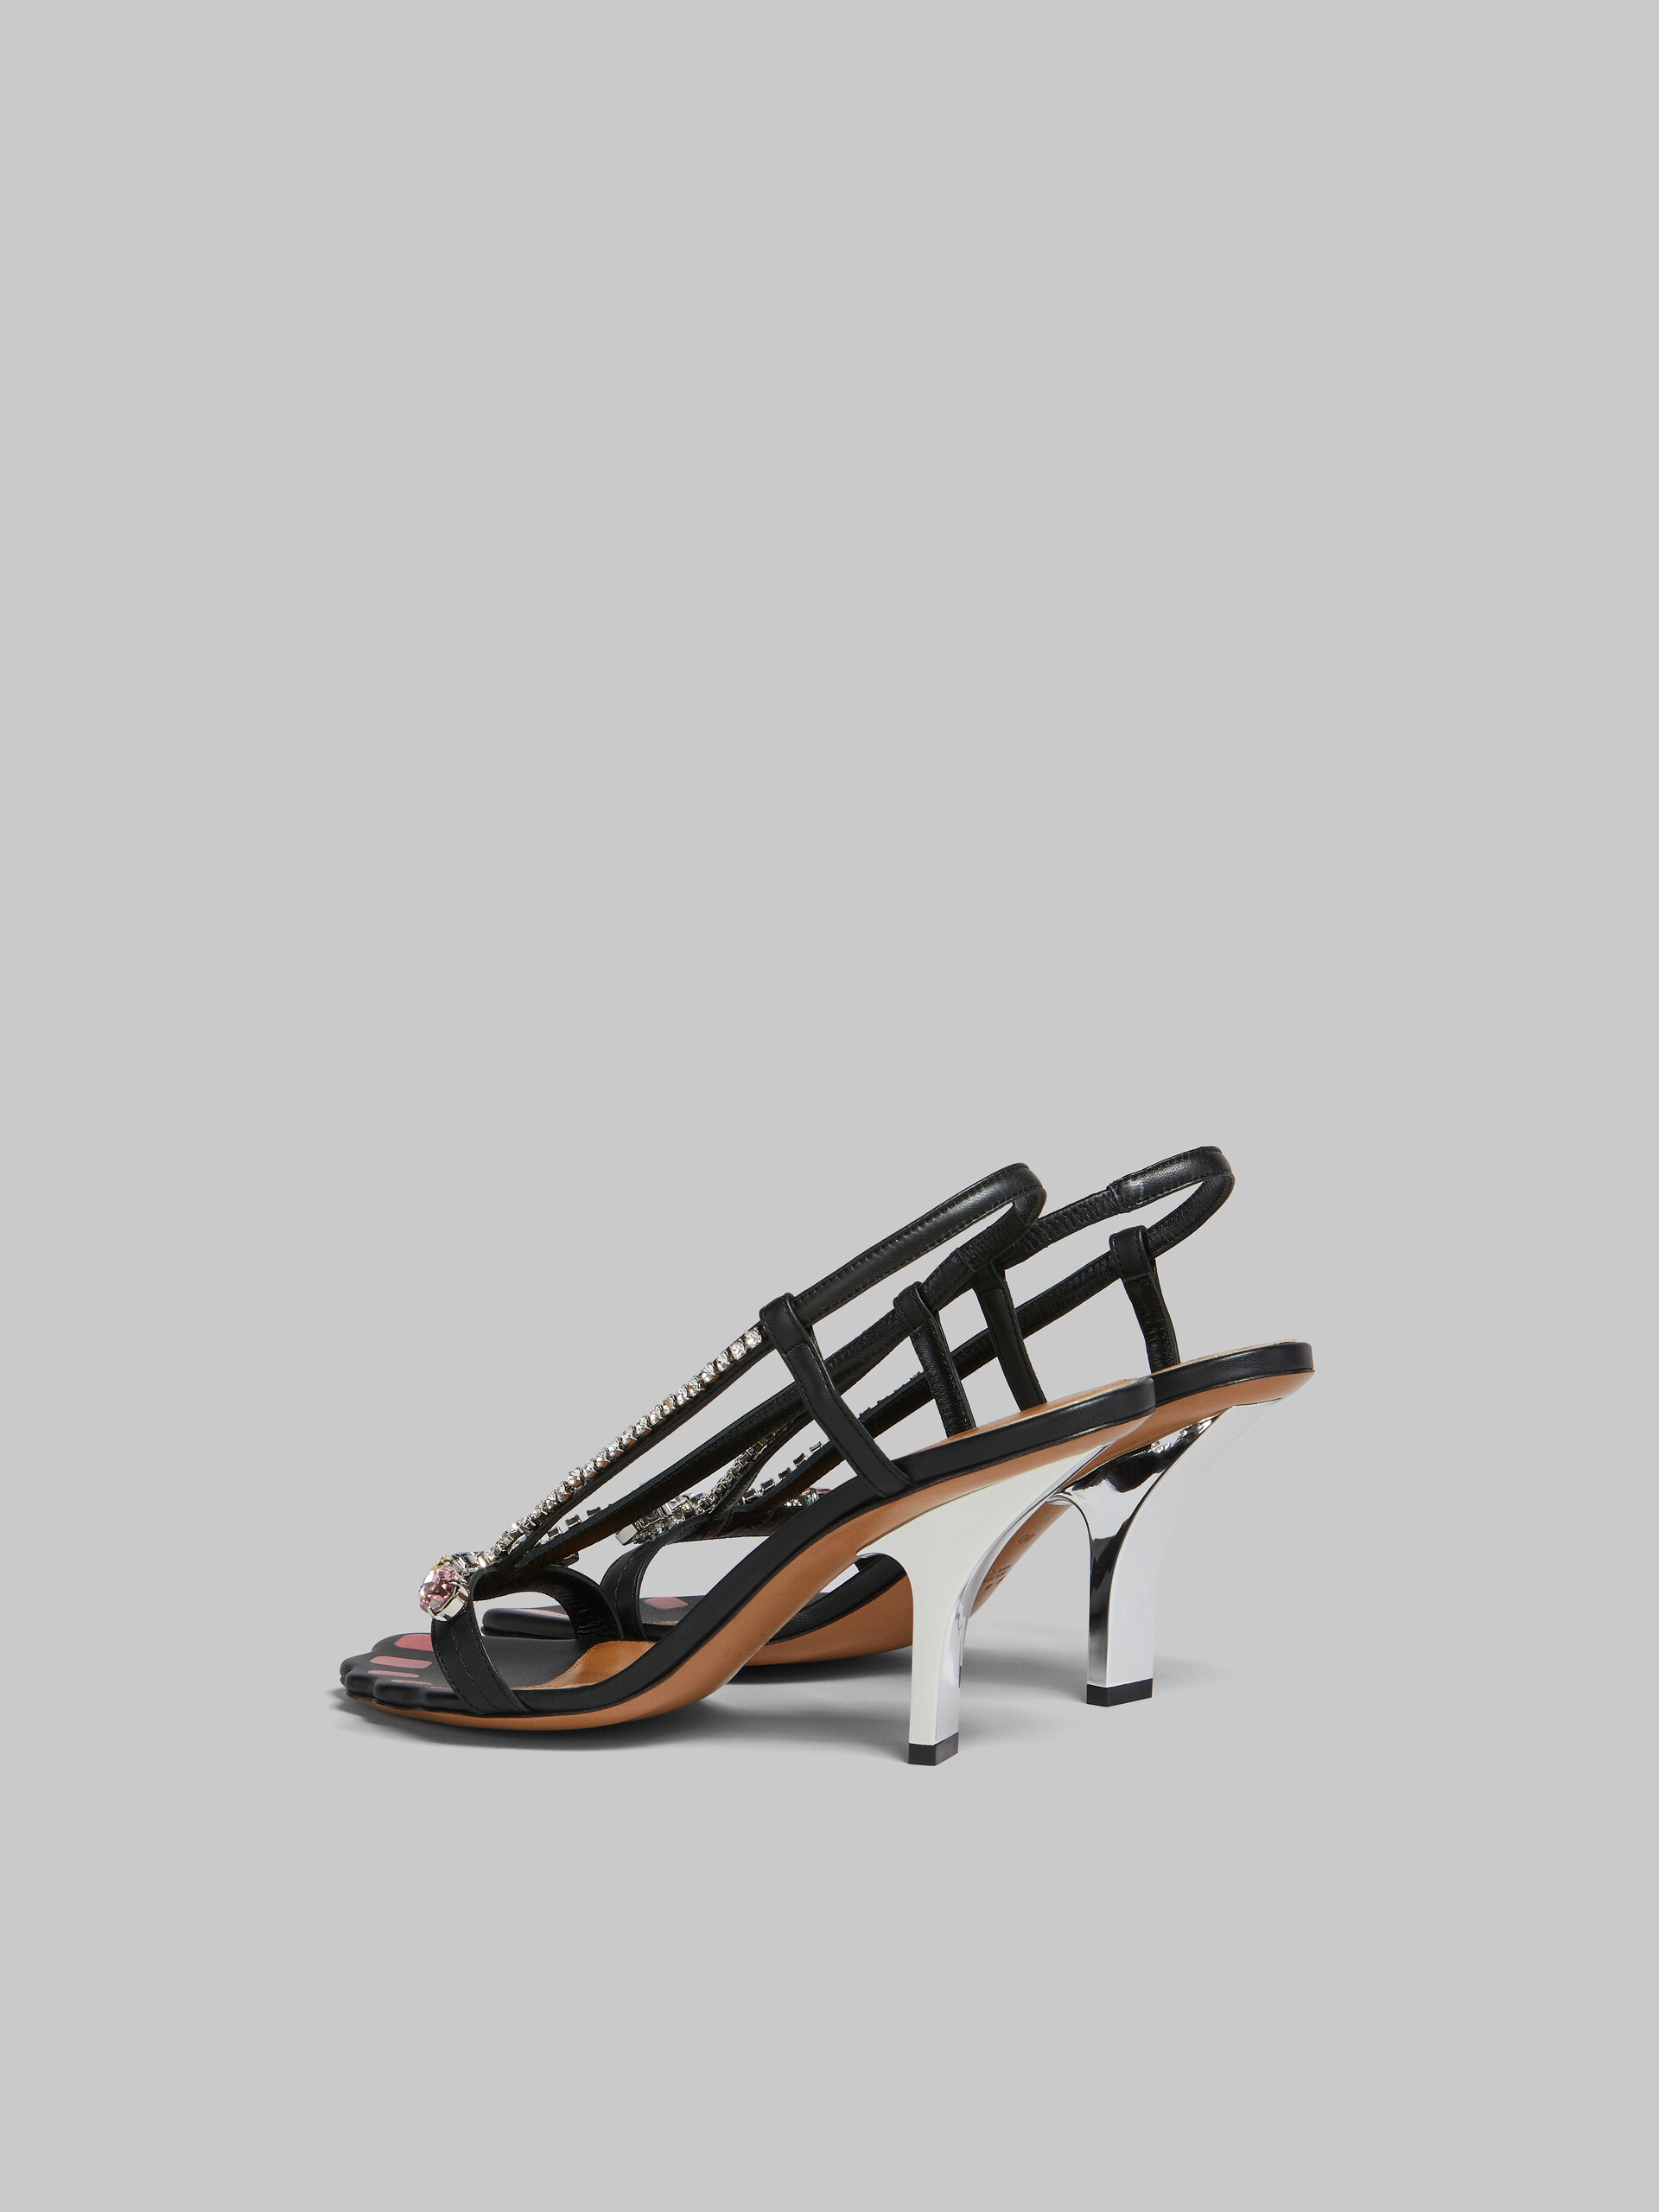 Sandales en cuir noir avec gemmes - Sandales - Image 3